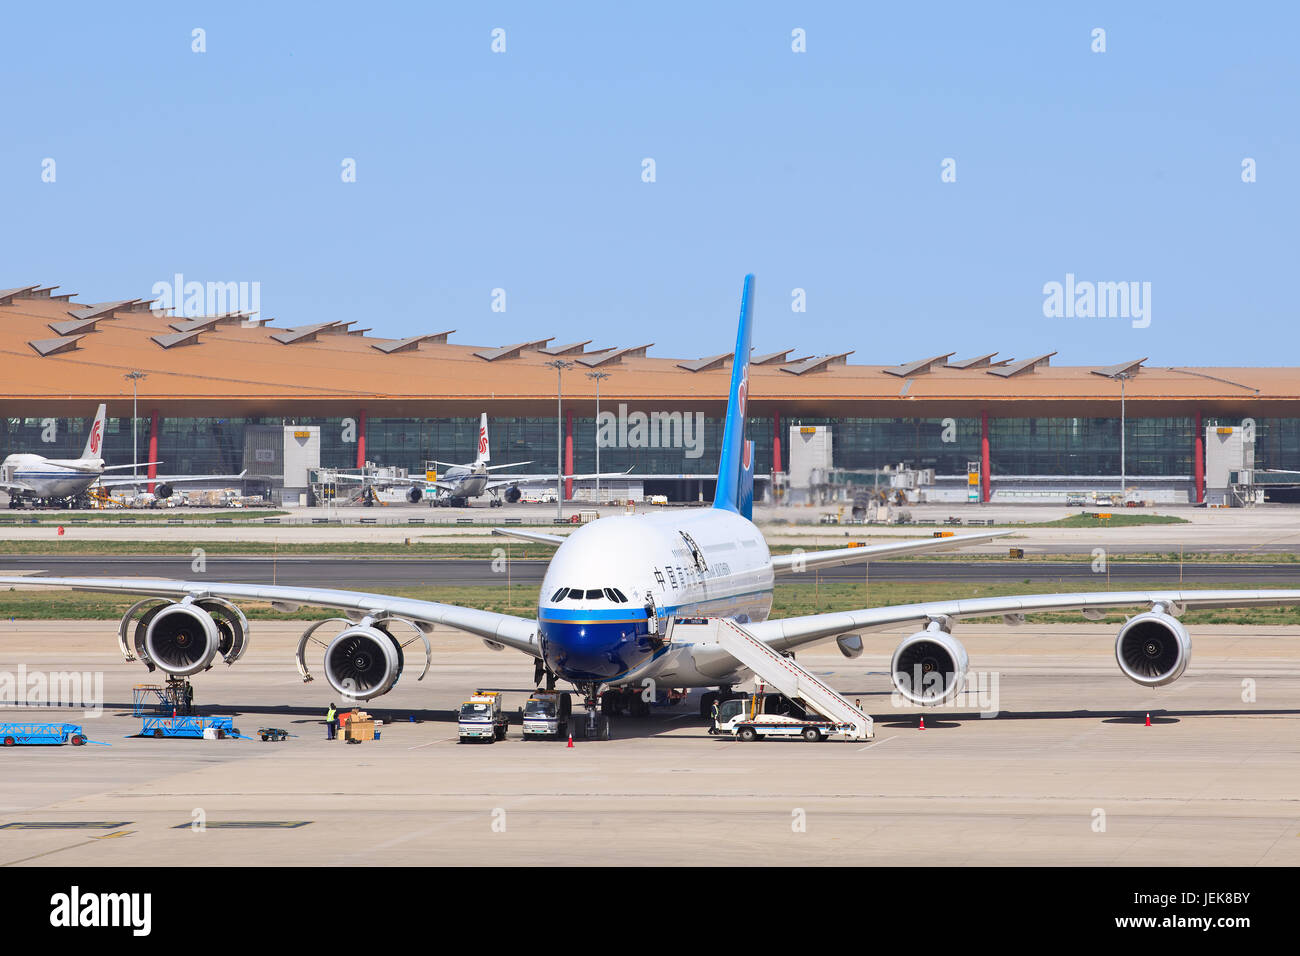 PEKING-11. MAI 2013. Airbus A380-861 am Flughafen Beijing Capital. Der Airbus ist ein viermotoriger Doppeldeck-Jet-Passagierflugzeug mit breitem Körper. Stockfoto